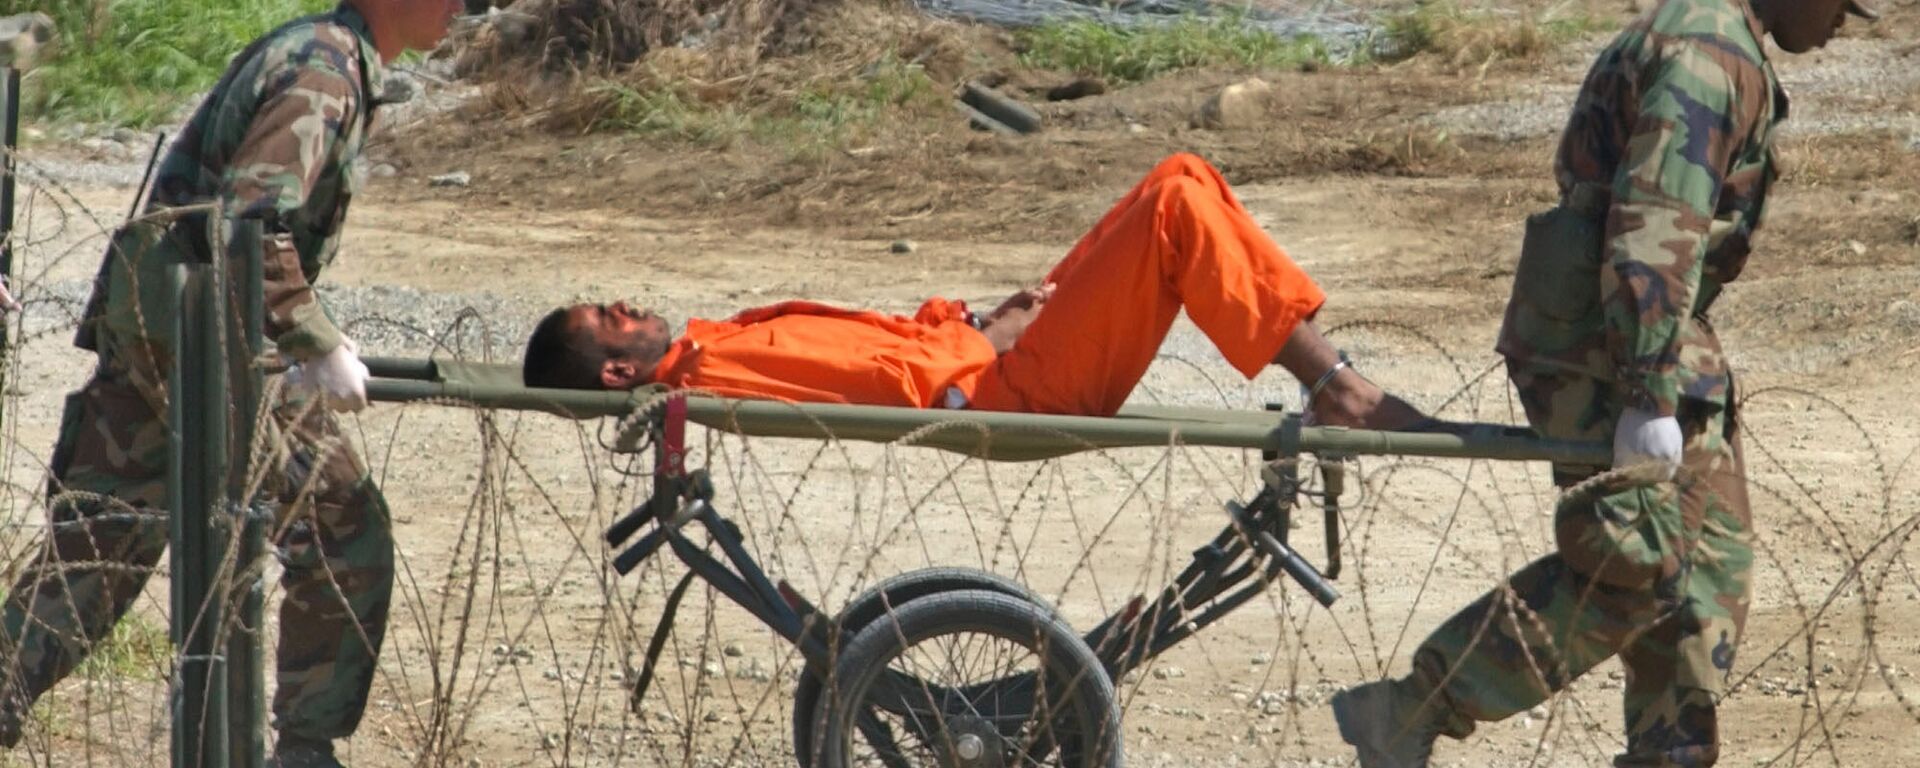 Na prisão de Guantánamo, militares americanos transportam prisioneiro para ser interrogado - Sputnik Brasil, 1920, 12.01.2022